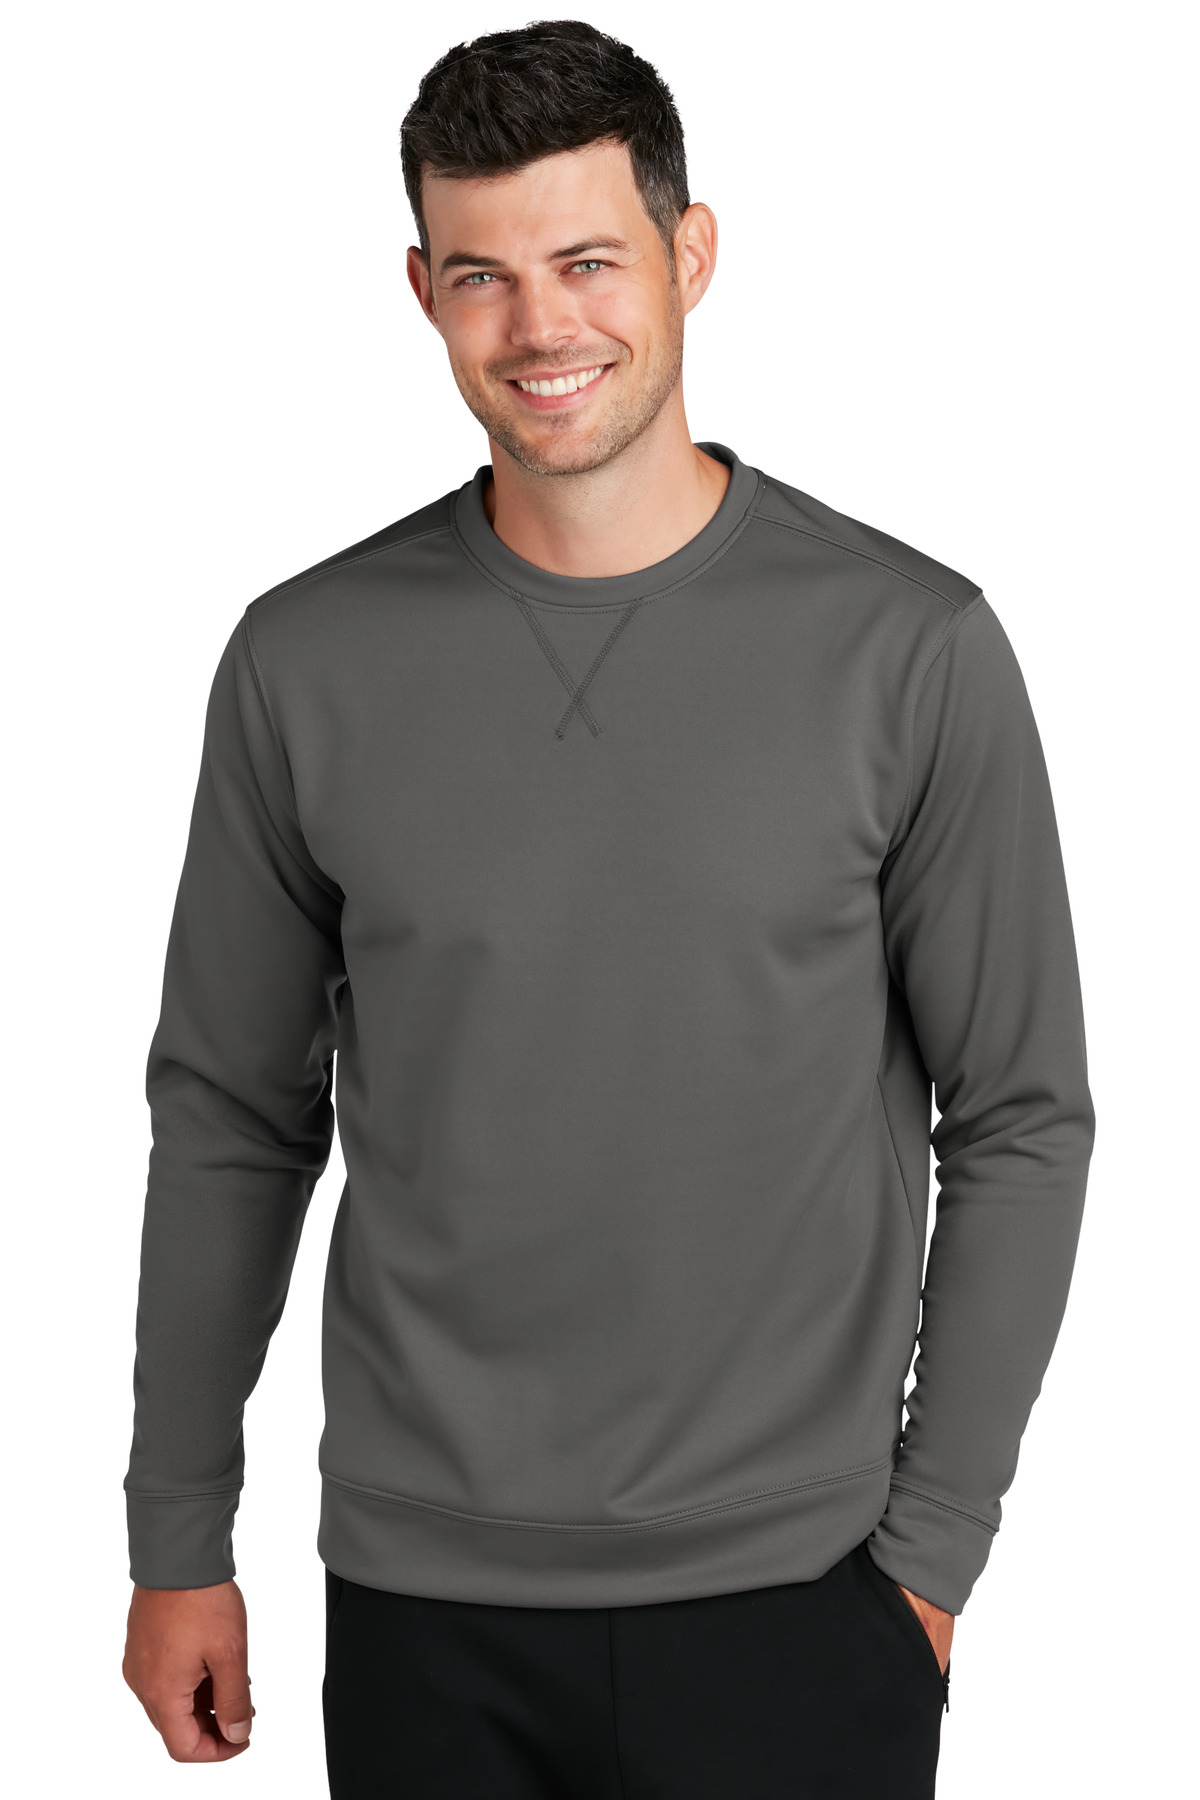 Port & Company Hospitality Sweatshirts & Fleece ®Performance Fleece Crewneck Sweatshirt.-Port & Company